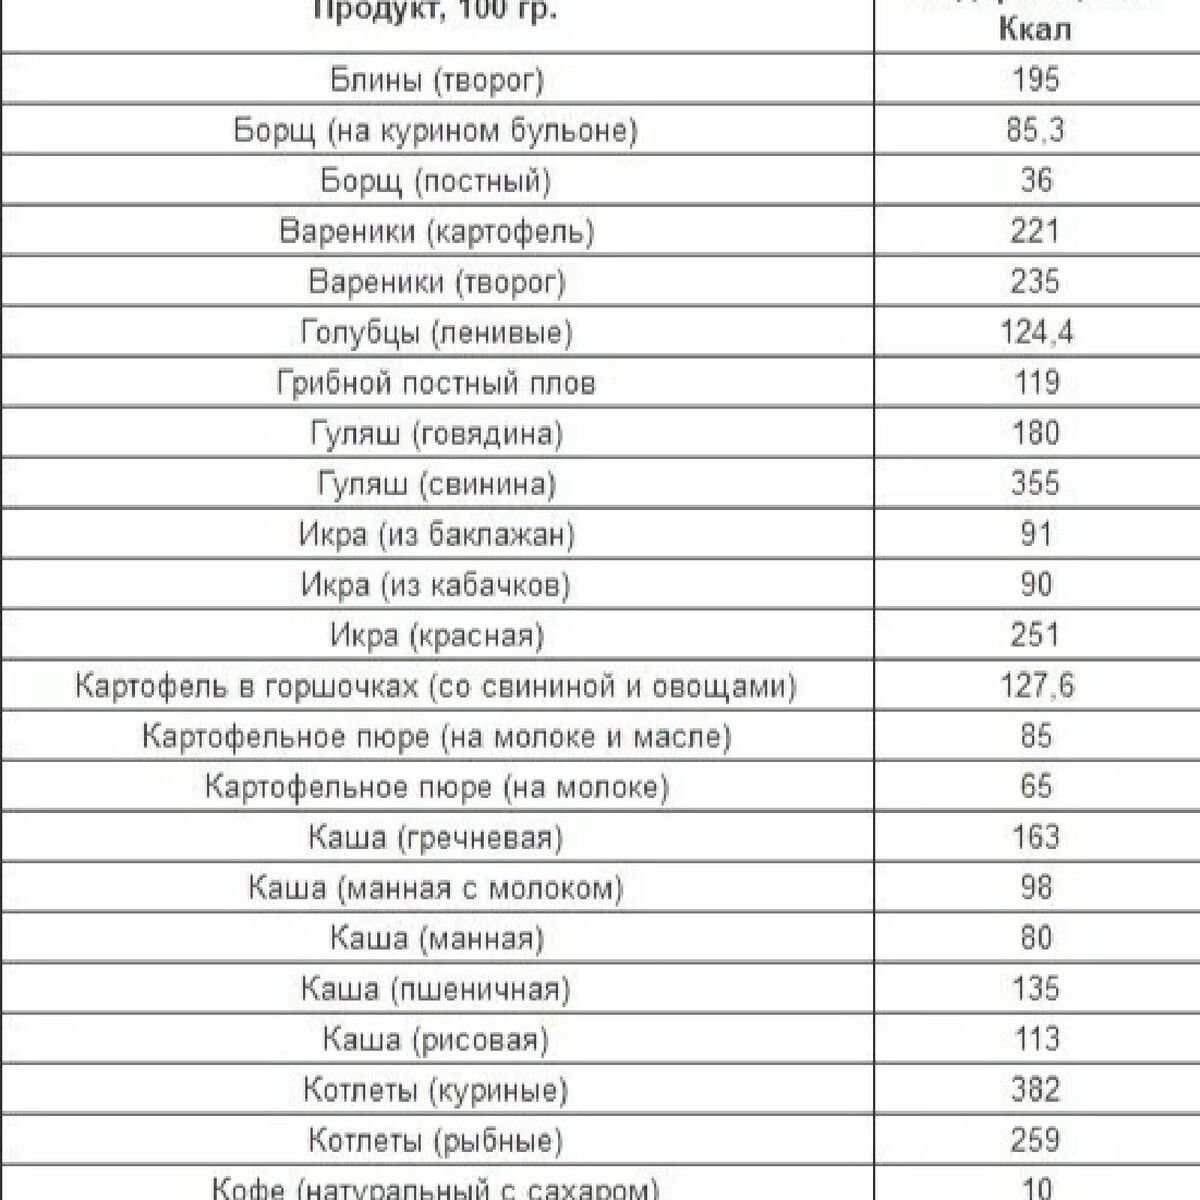 Таблица расчета калорий продуктов для похудения